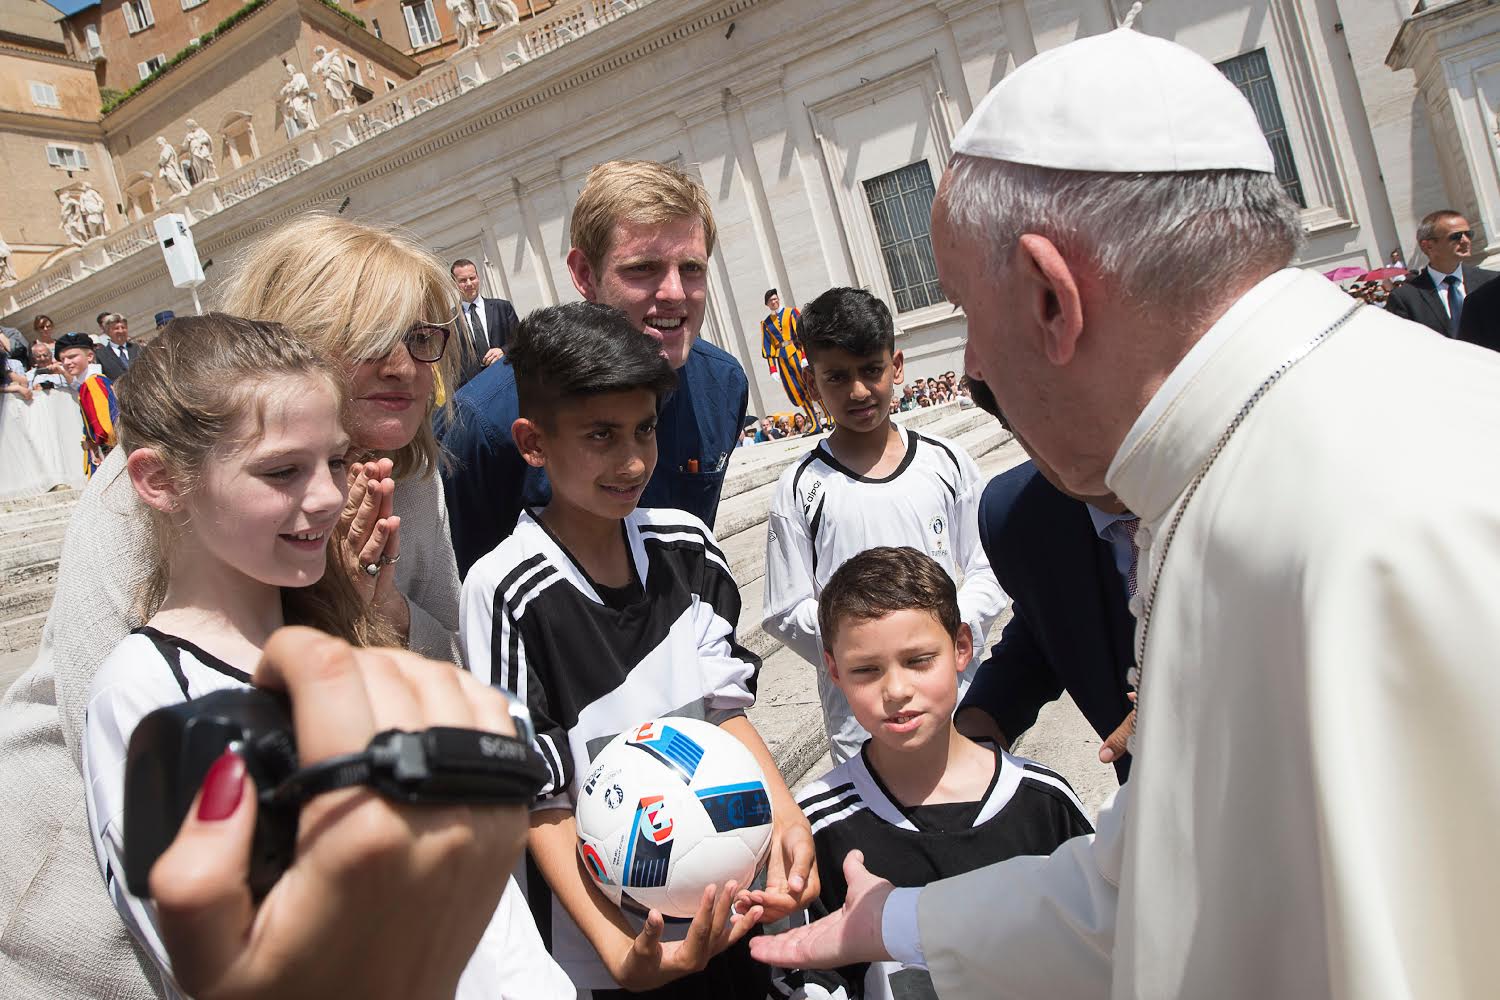 Audience du 22 juin 2016, jeunes avec un ballon (c) L'Osservatore Romano